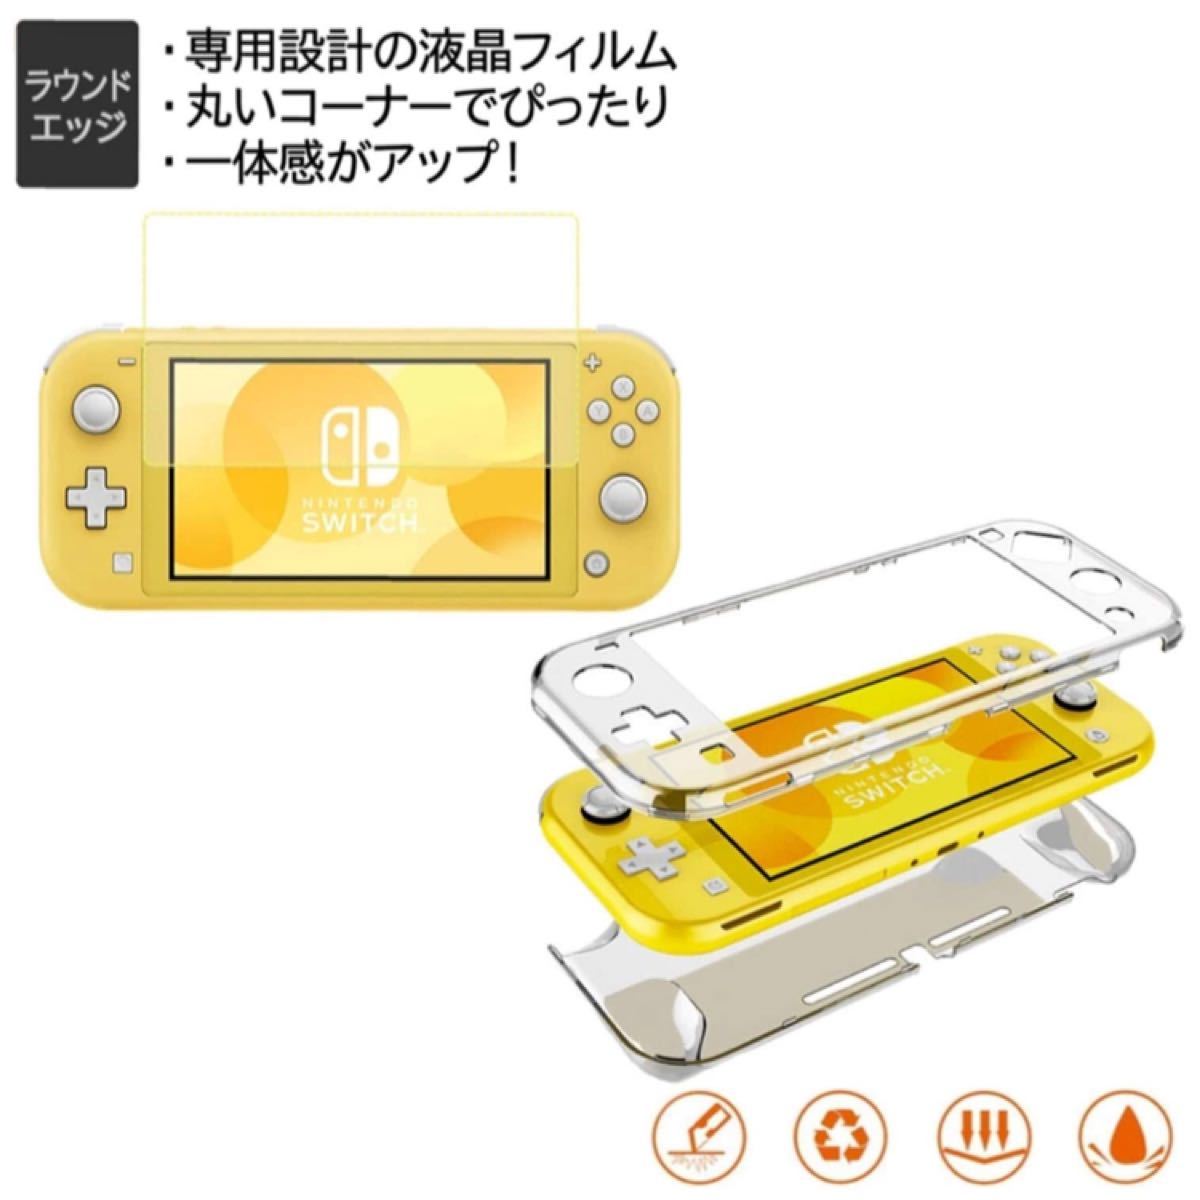 最新 Nintendo Switch Lite ケース 任天堂スイッチ専用収納